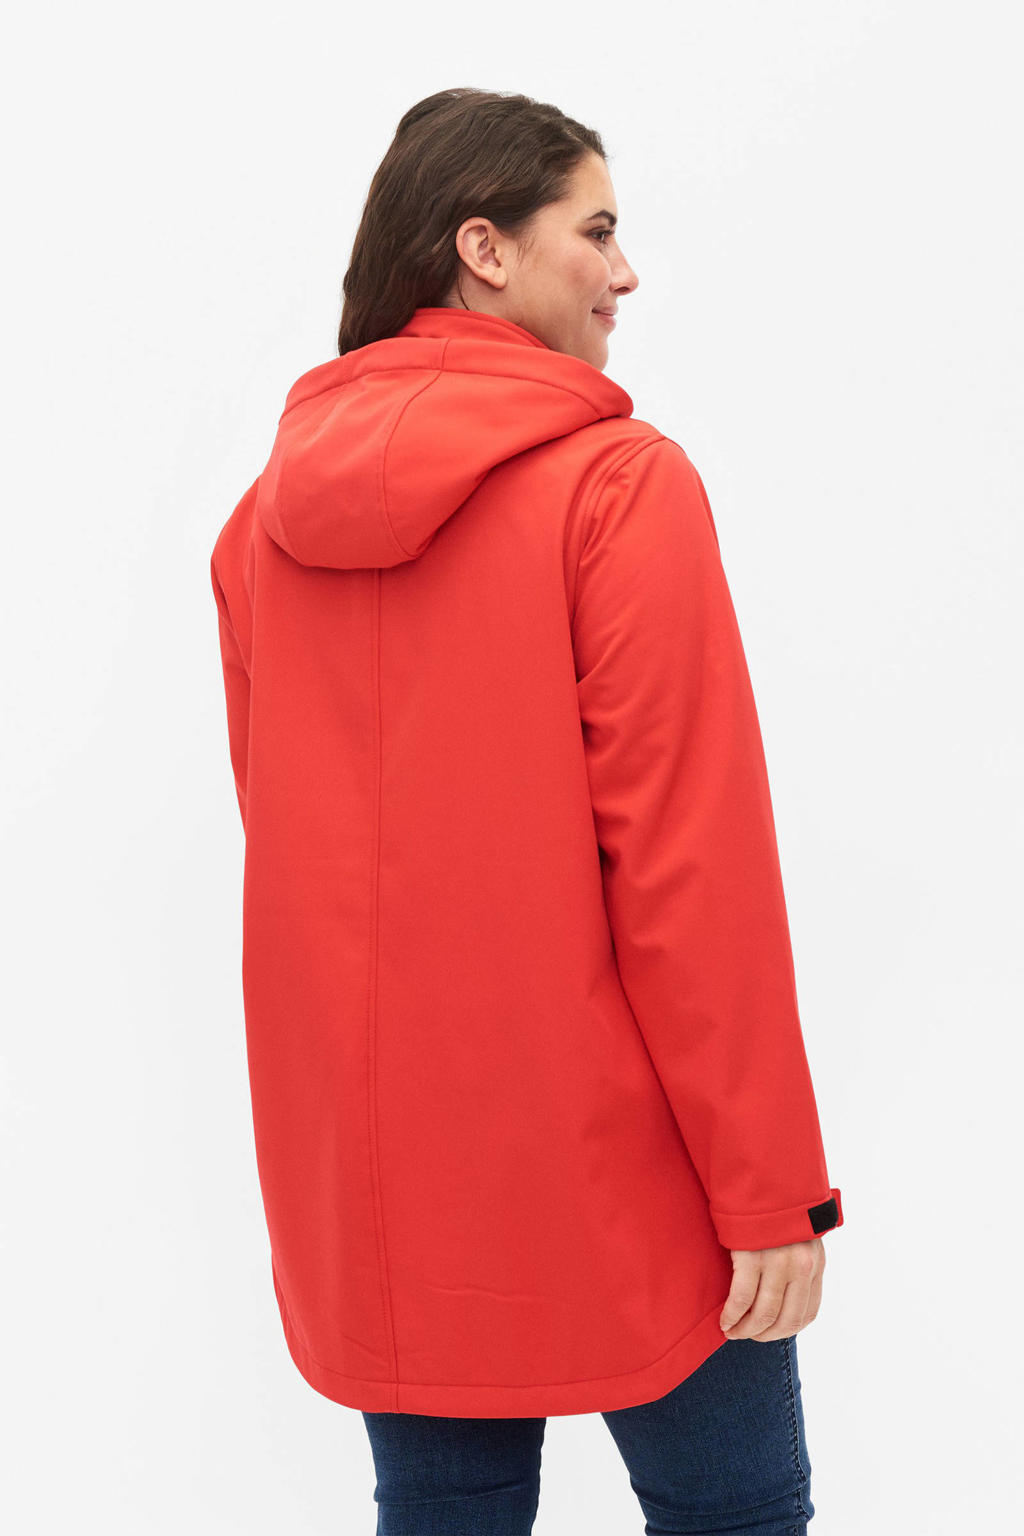 Rode dames Zizzi softshell jas van polyester met lange mouwen, capuchon en ritssluiting